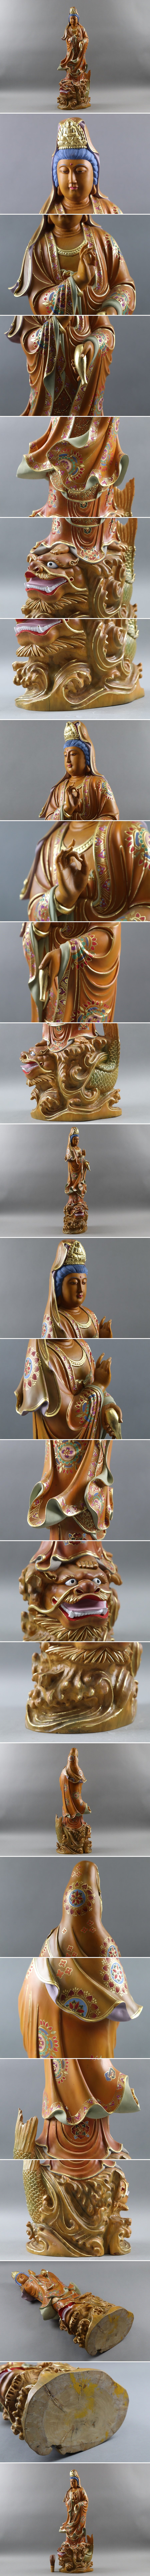 ショッピ仏教美術 木造彩色 魚籃観音立像 高66,5cm 仏像 獅子魚 木製 木彫 細密細工 古美術品[a614] 仏像